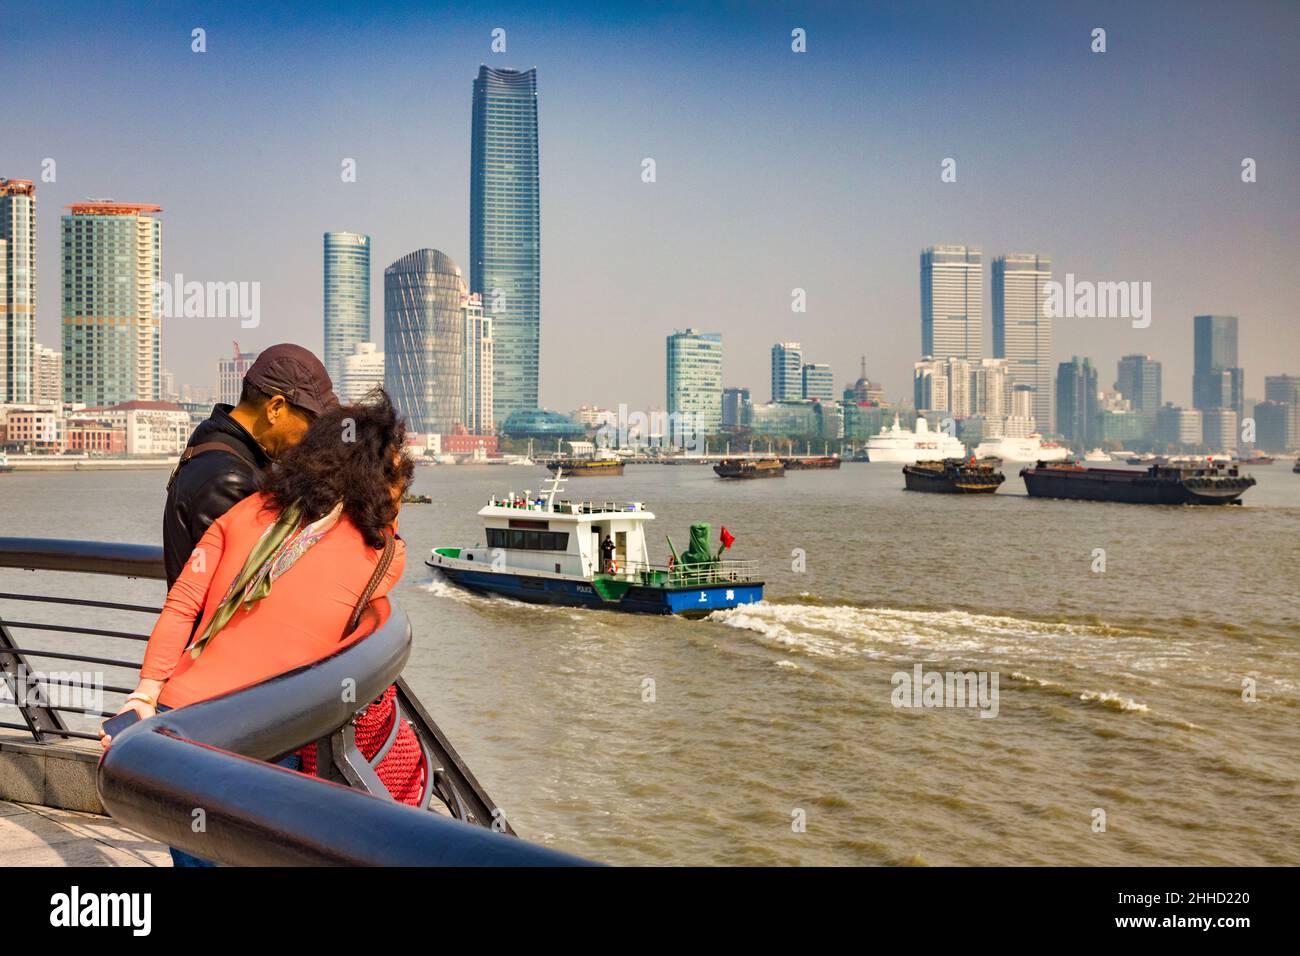 29. November 2018: Shanghai, China - das Touristenpaar lehnt sich an die Schiene und blickt auf die geschäftige Schifffahrt auf dem Huangpu-Fluss mit der Pudong Distri Stockfoto